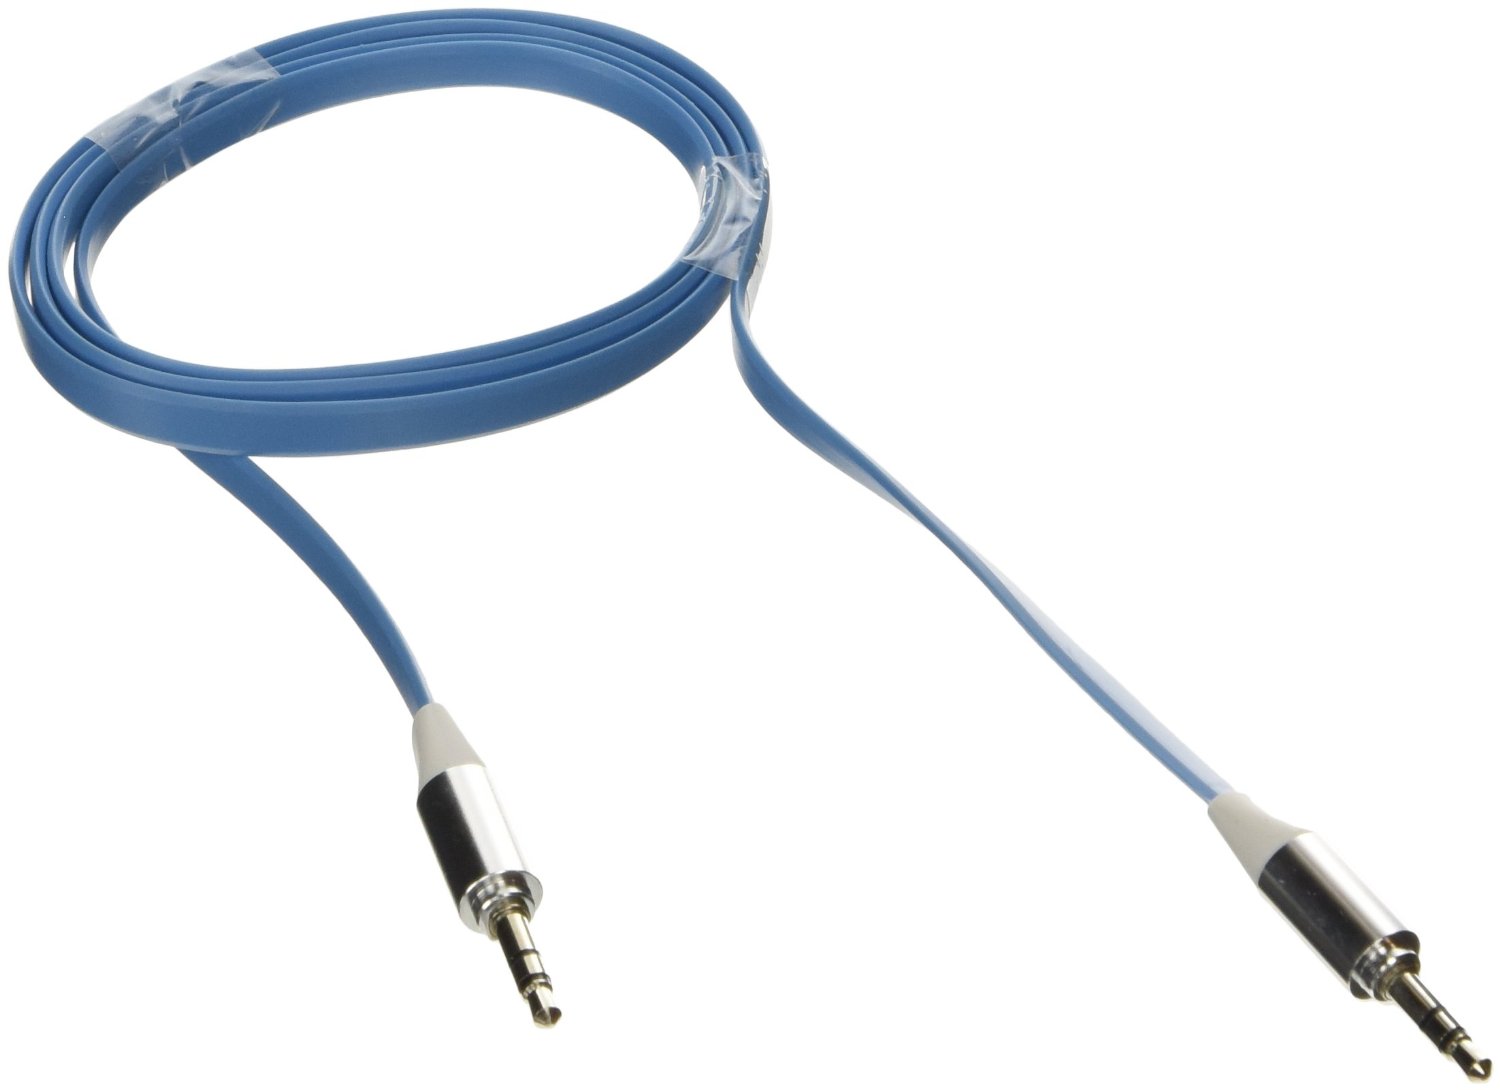 Poppstar 3,5mm Flachband Audio Klinken-Kabel 1m blau für Handy/Smartphone/Tablet